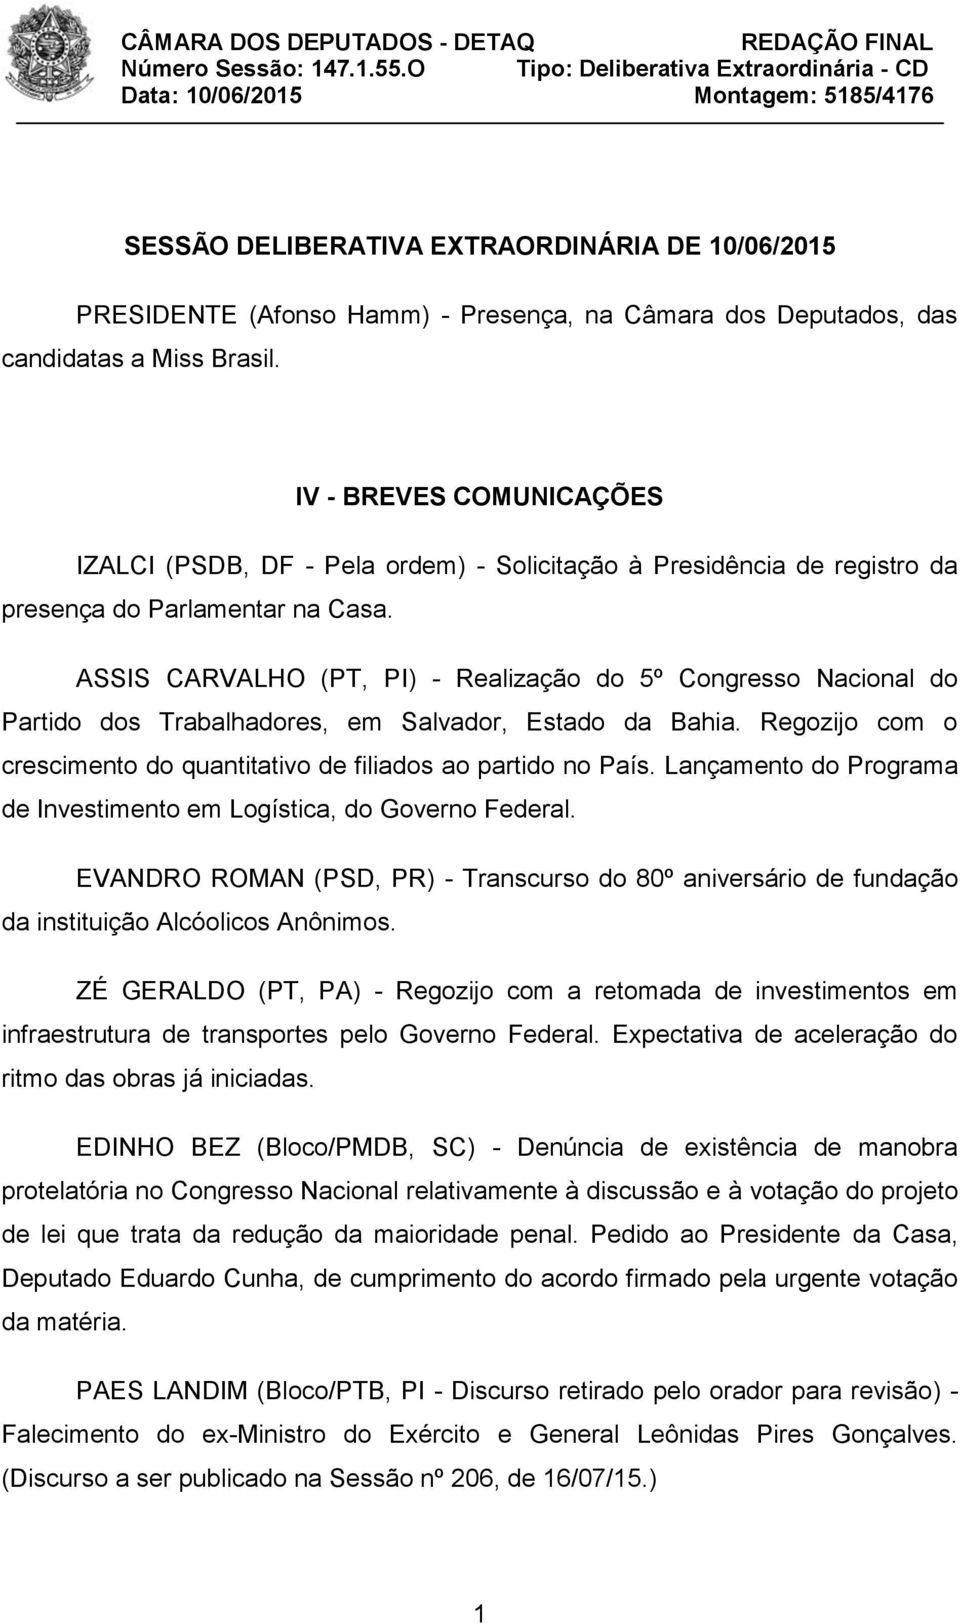 ASSIS CARVALHO (PT, PI) - Realização do 5º Congresso Nacional do Partido dos Trabalhadores, em Salvador, Estado da Bahia. Regozijo com o crescimento do quantitativo de filiados ao partido no País.